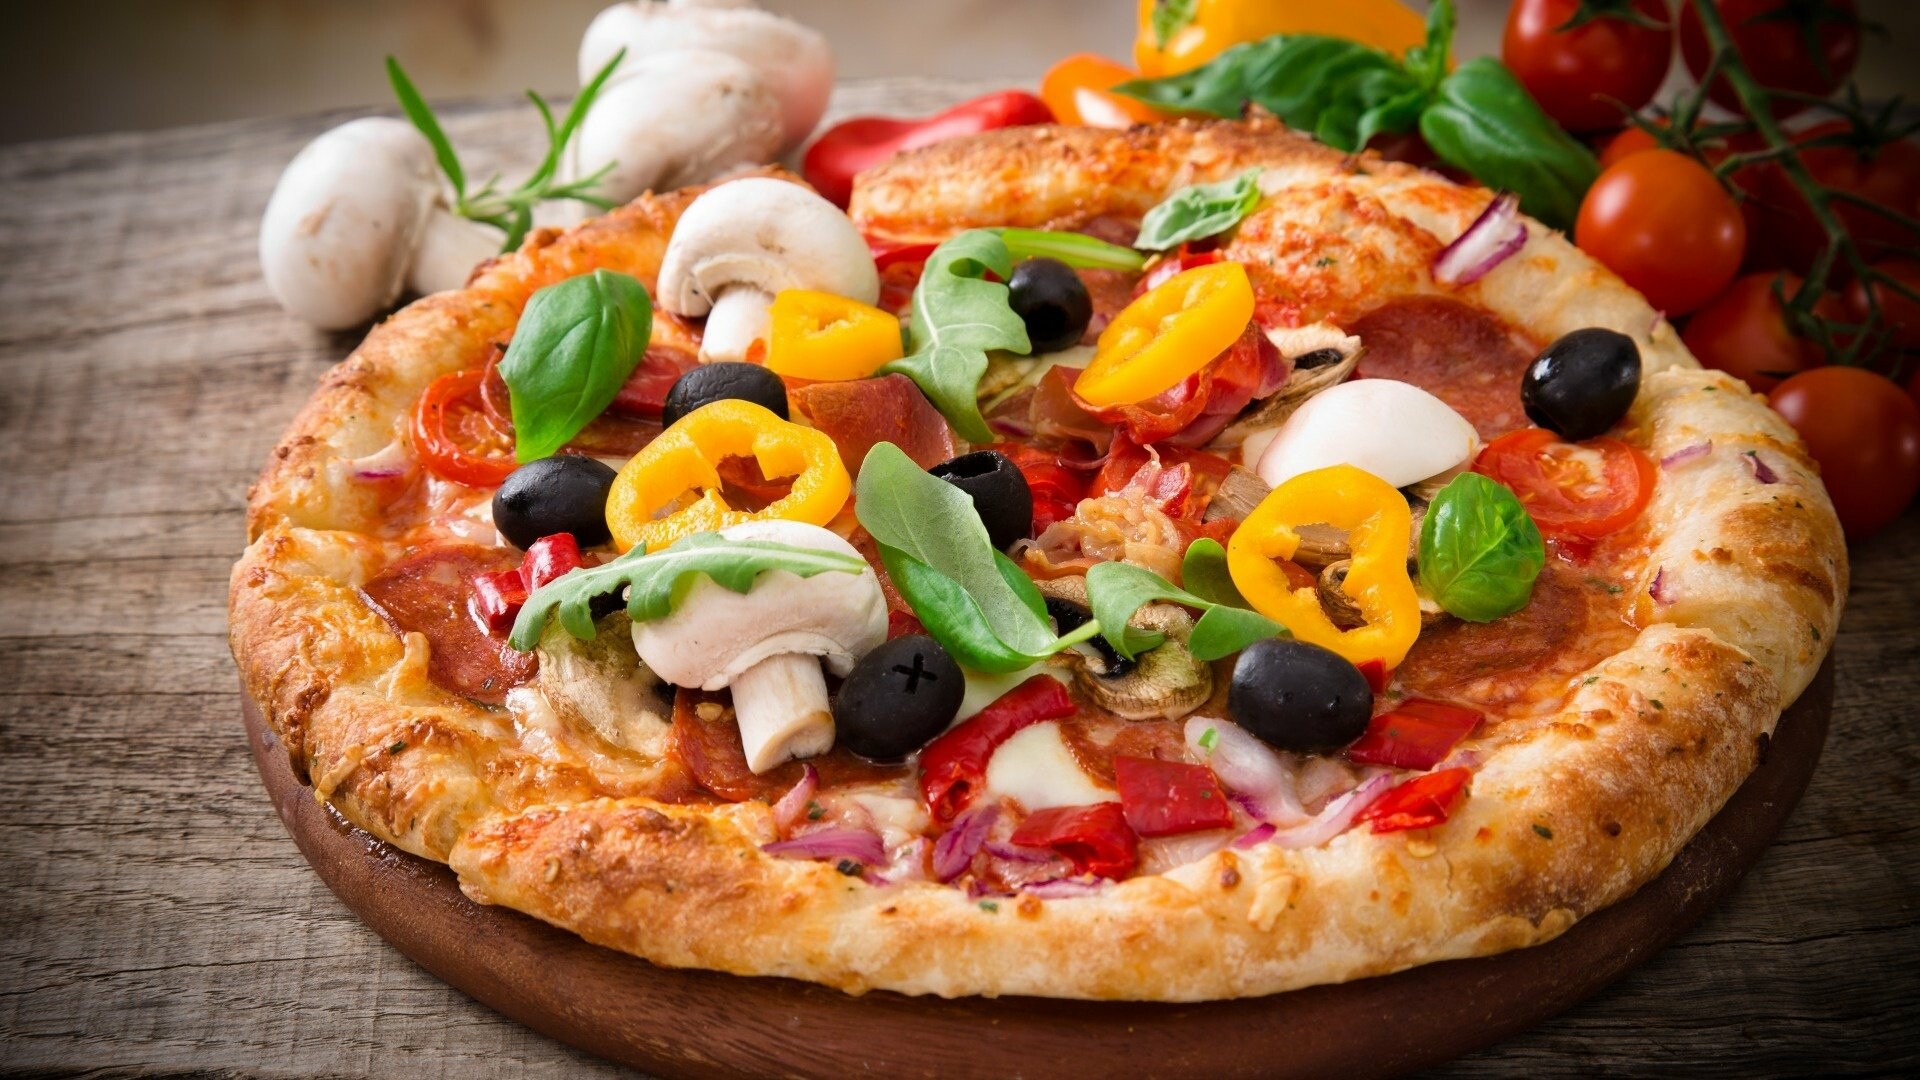 Pizza: Pizzetta, Crust, Mushrooms. 1920x1080 Full HD Wallpaper.